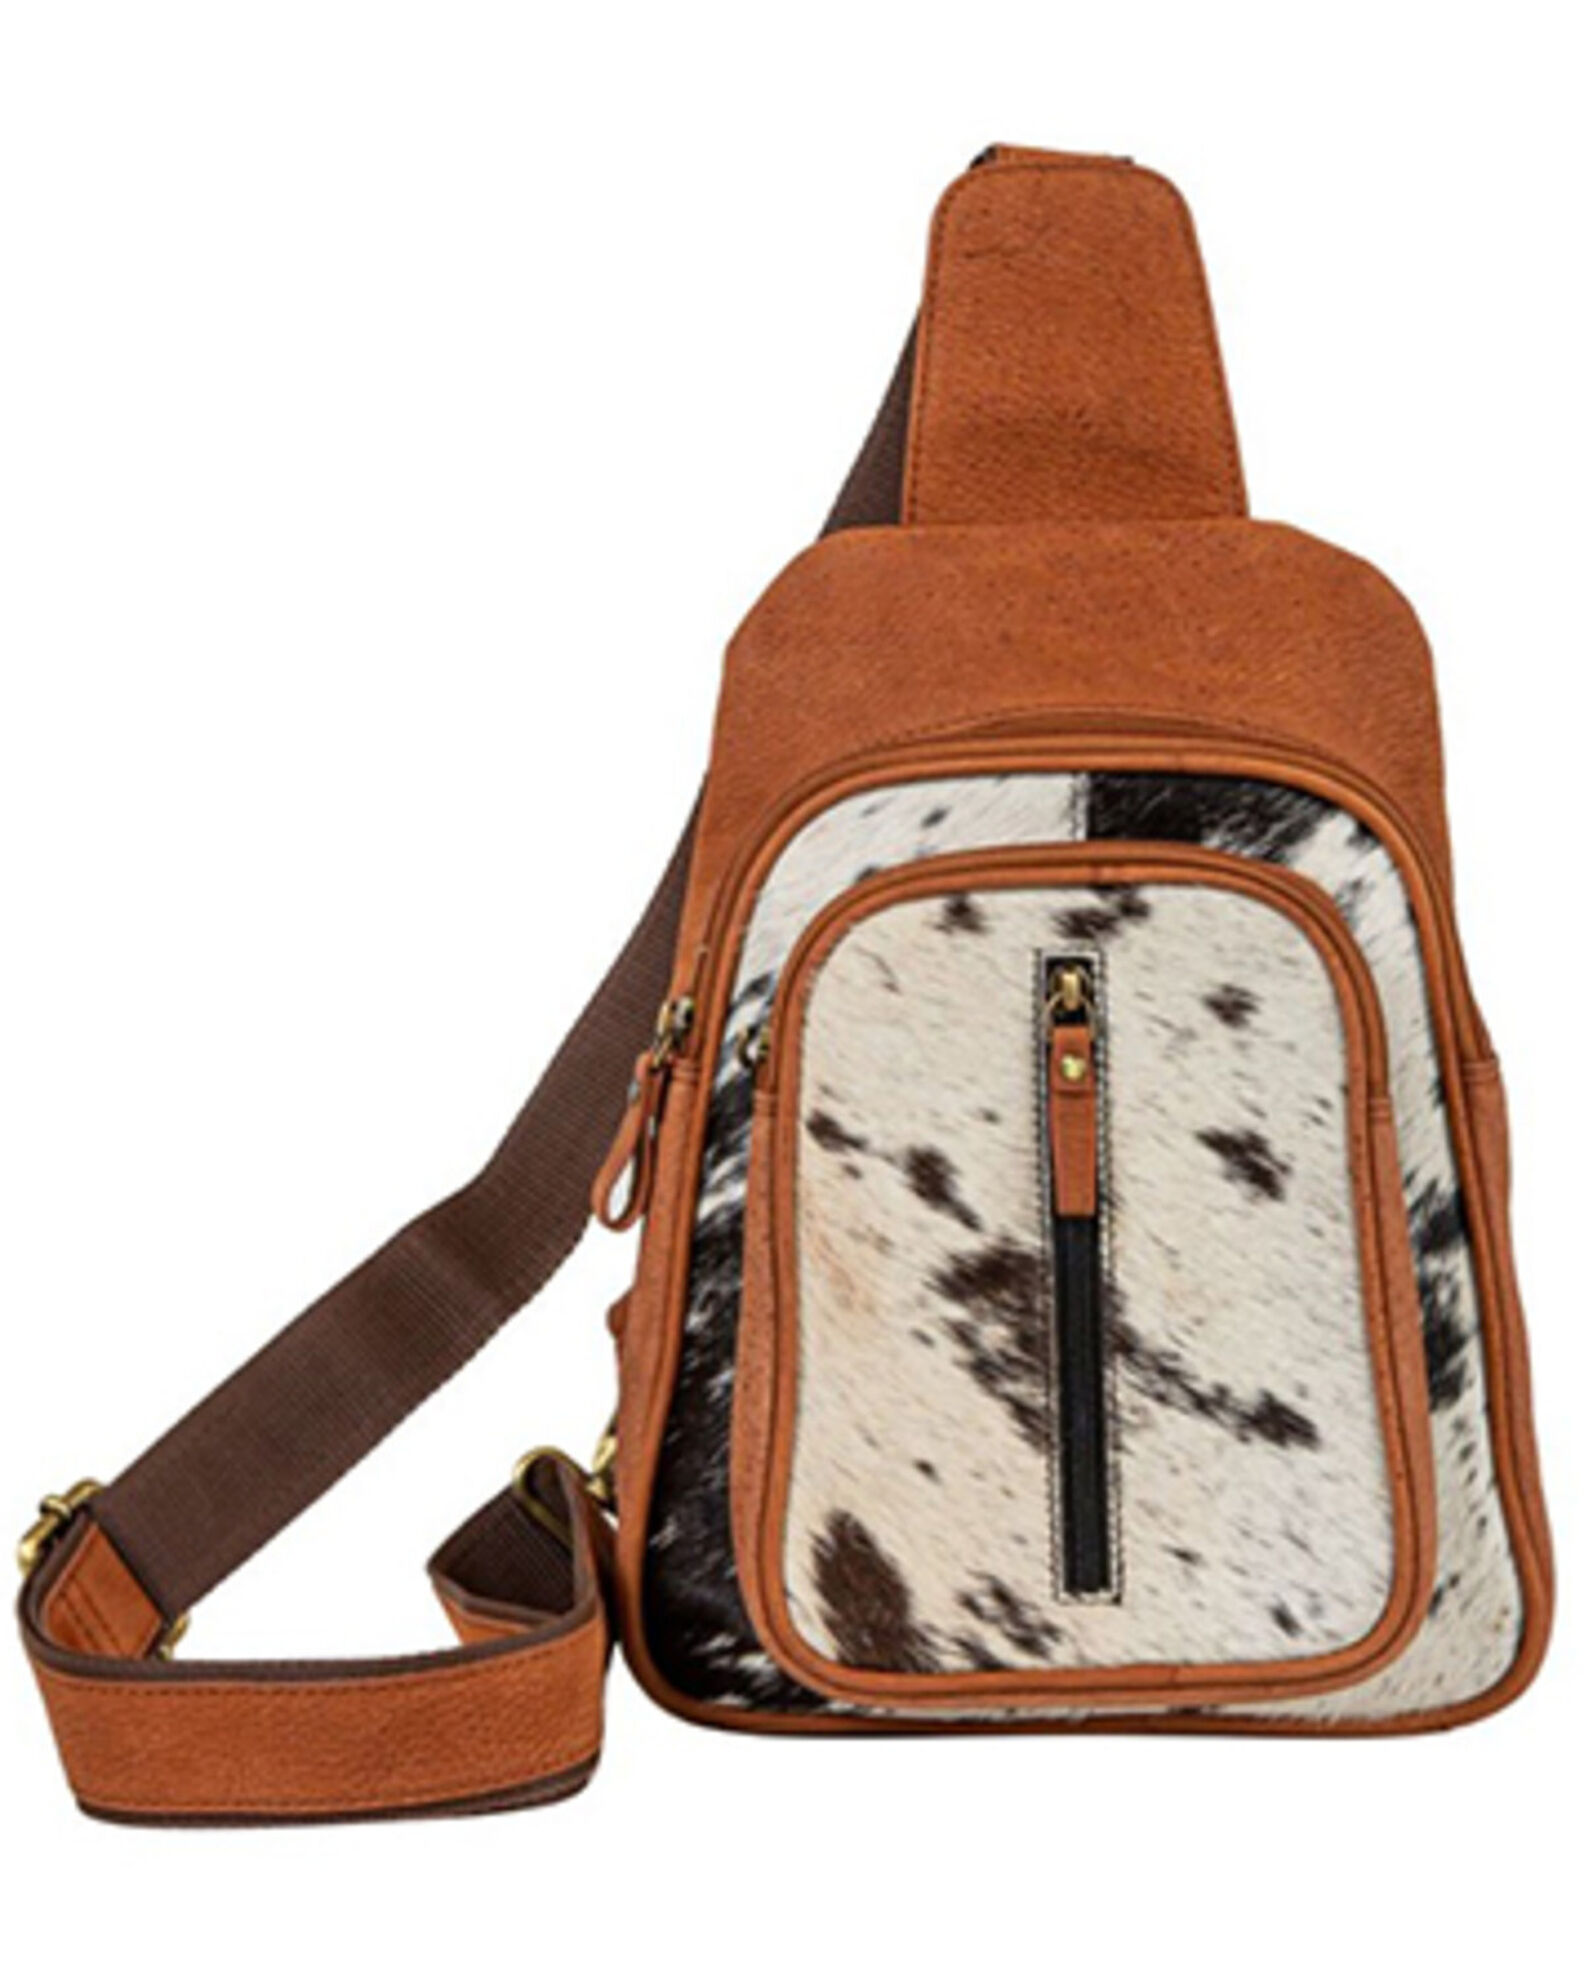 Wild West Purse Sling Shoulder Strap Brown Leather Bag Western